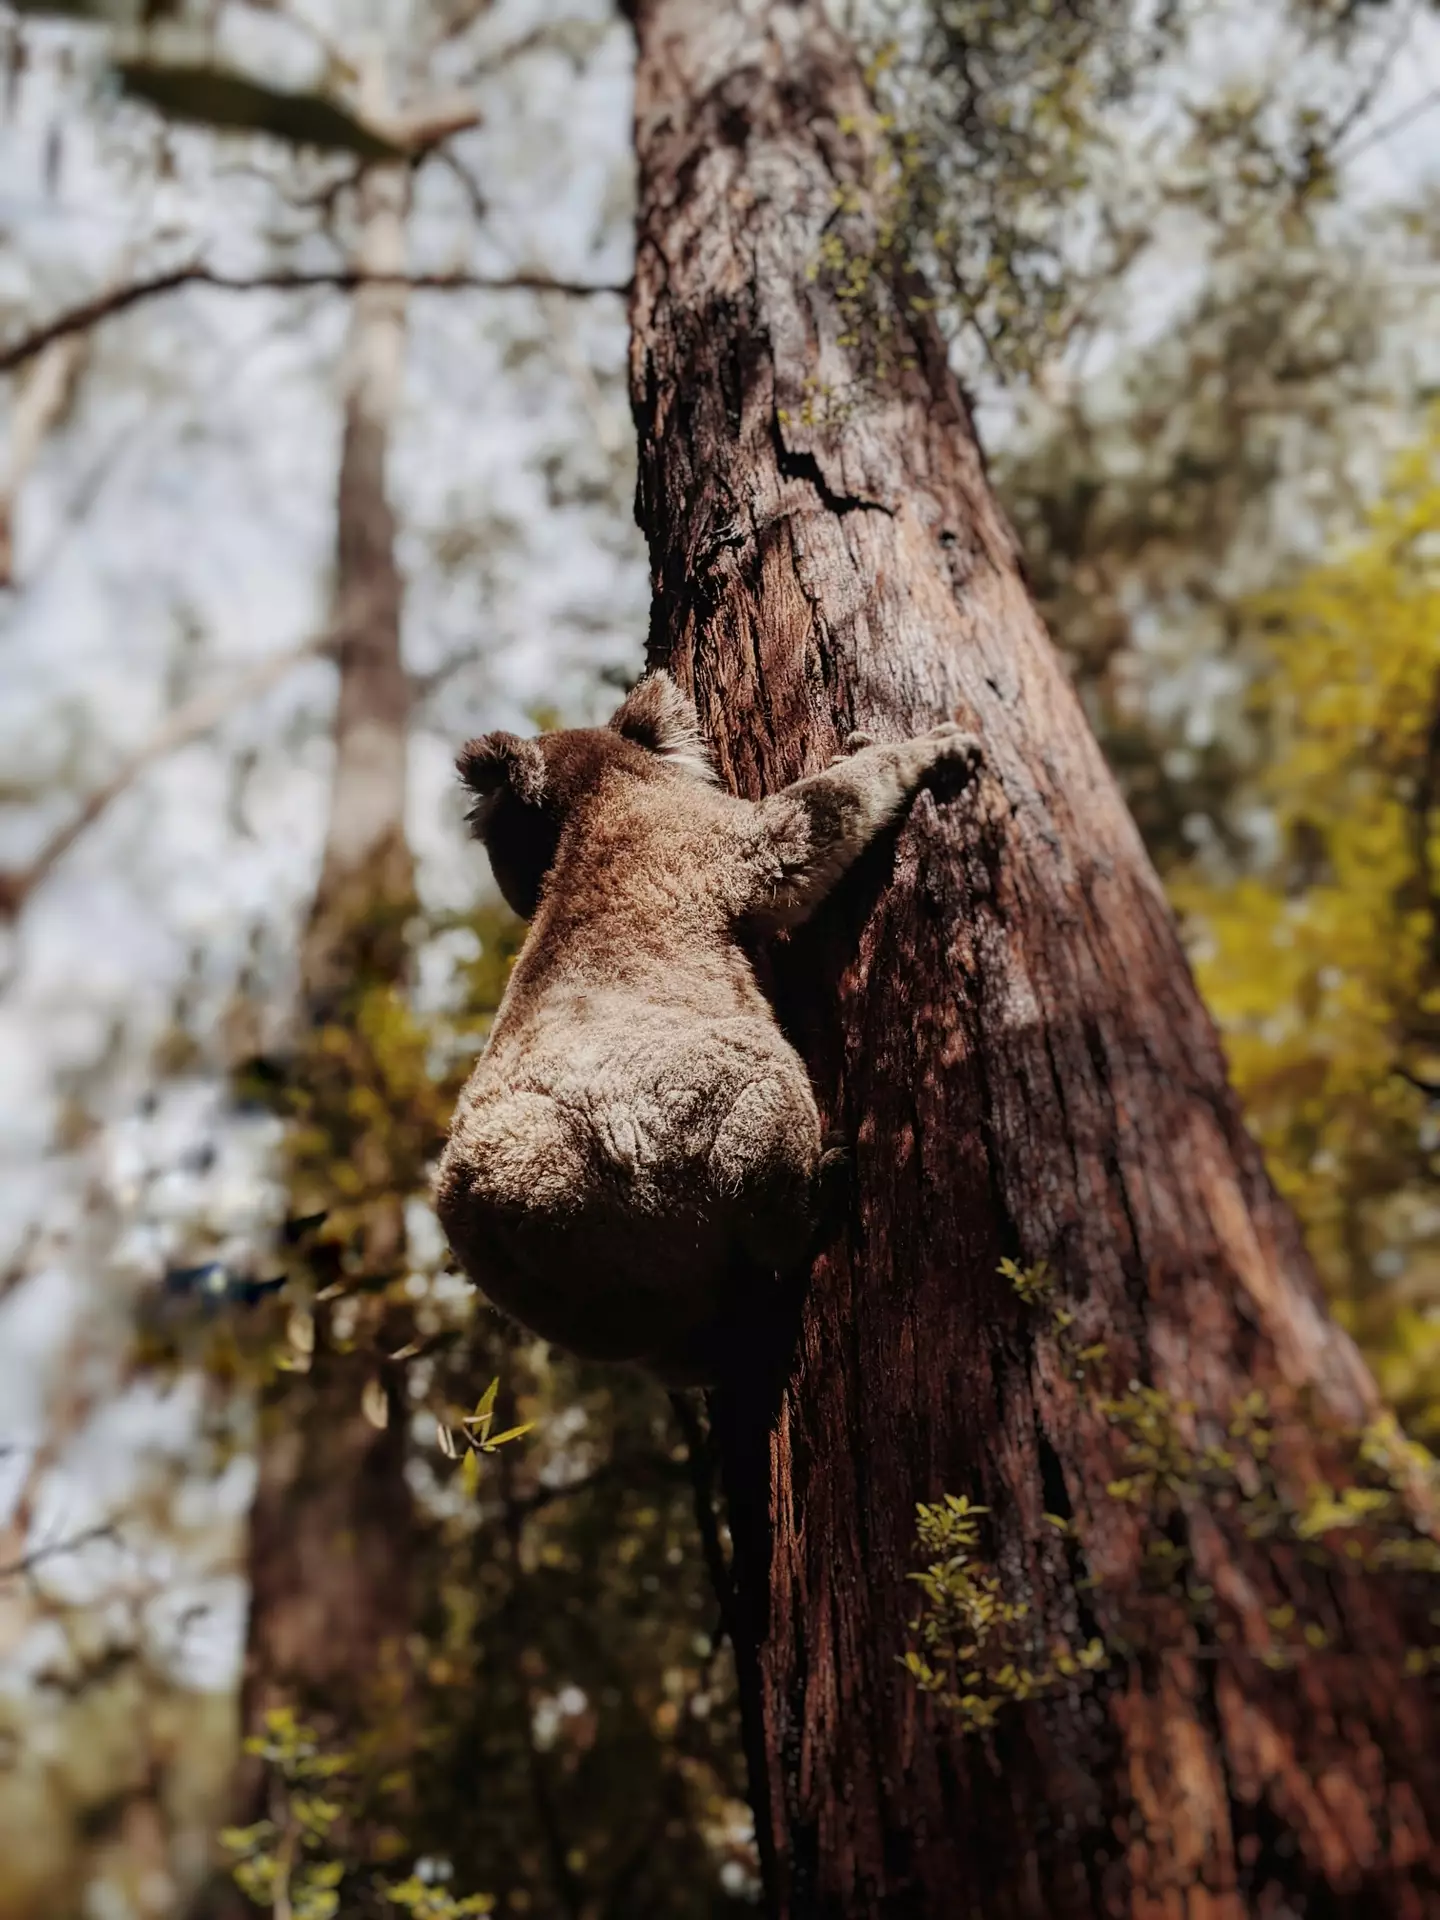 Koalas are typically found in eucalyptus trees.